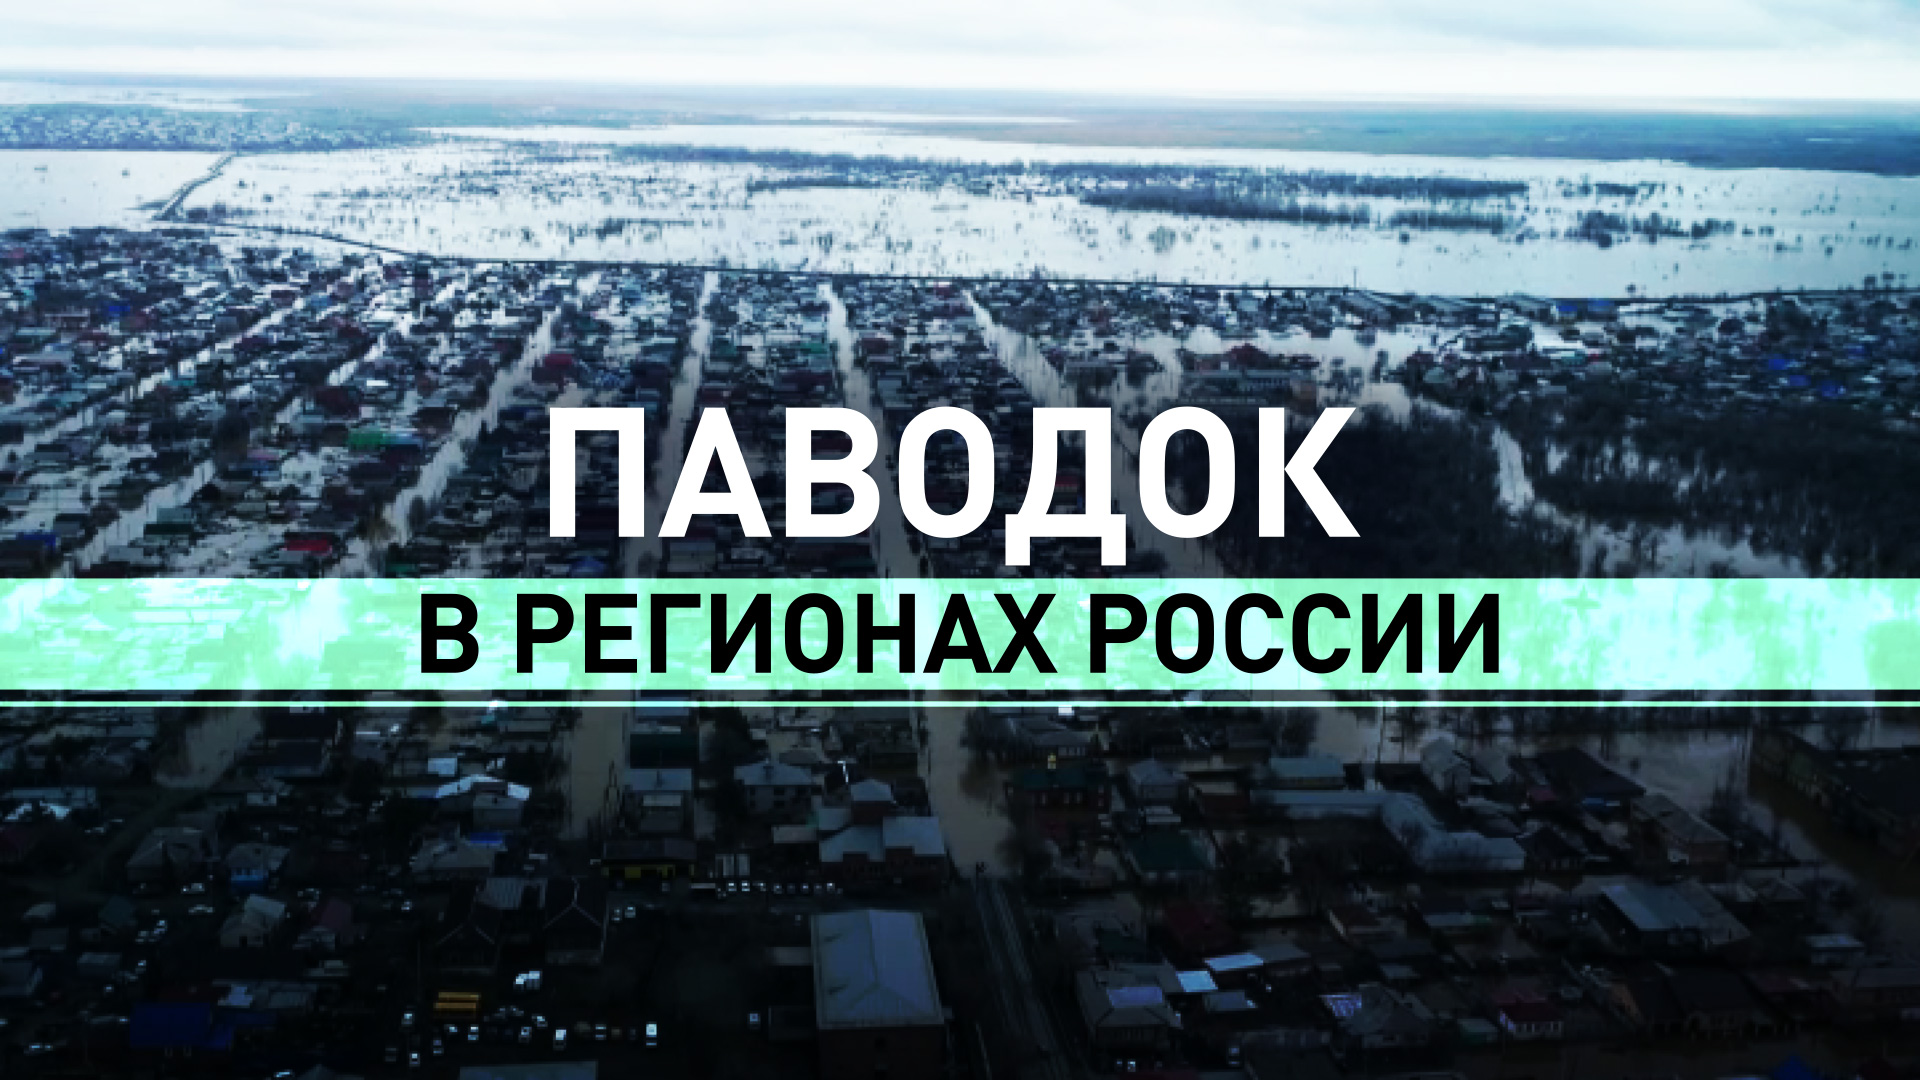 Риск подтопления новых районов: главное о ситуации с паводком в регионах России